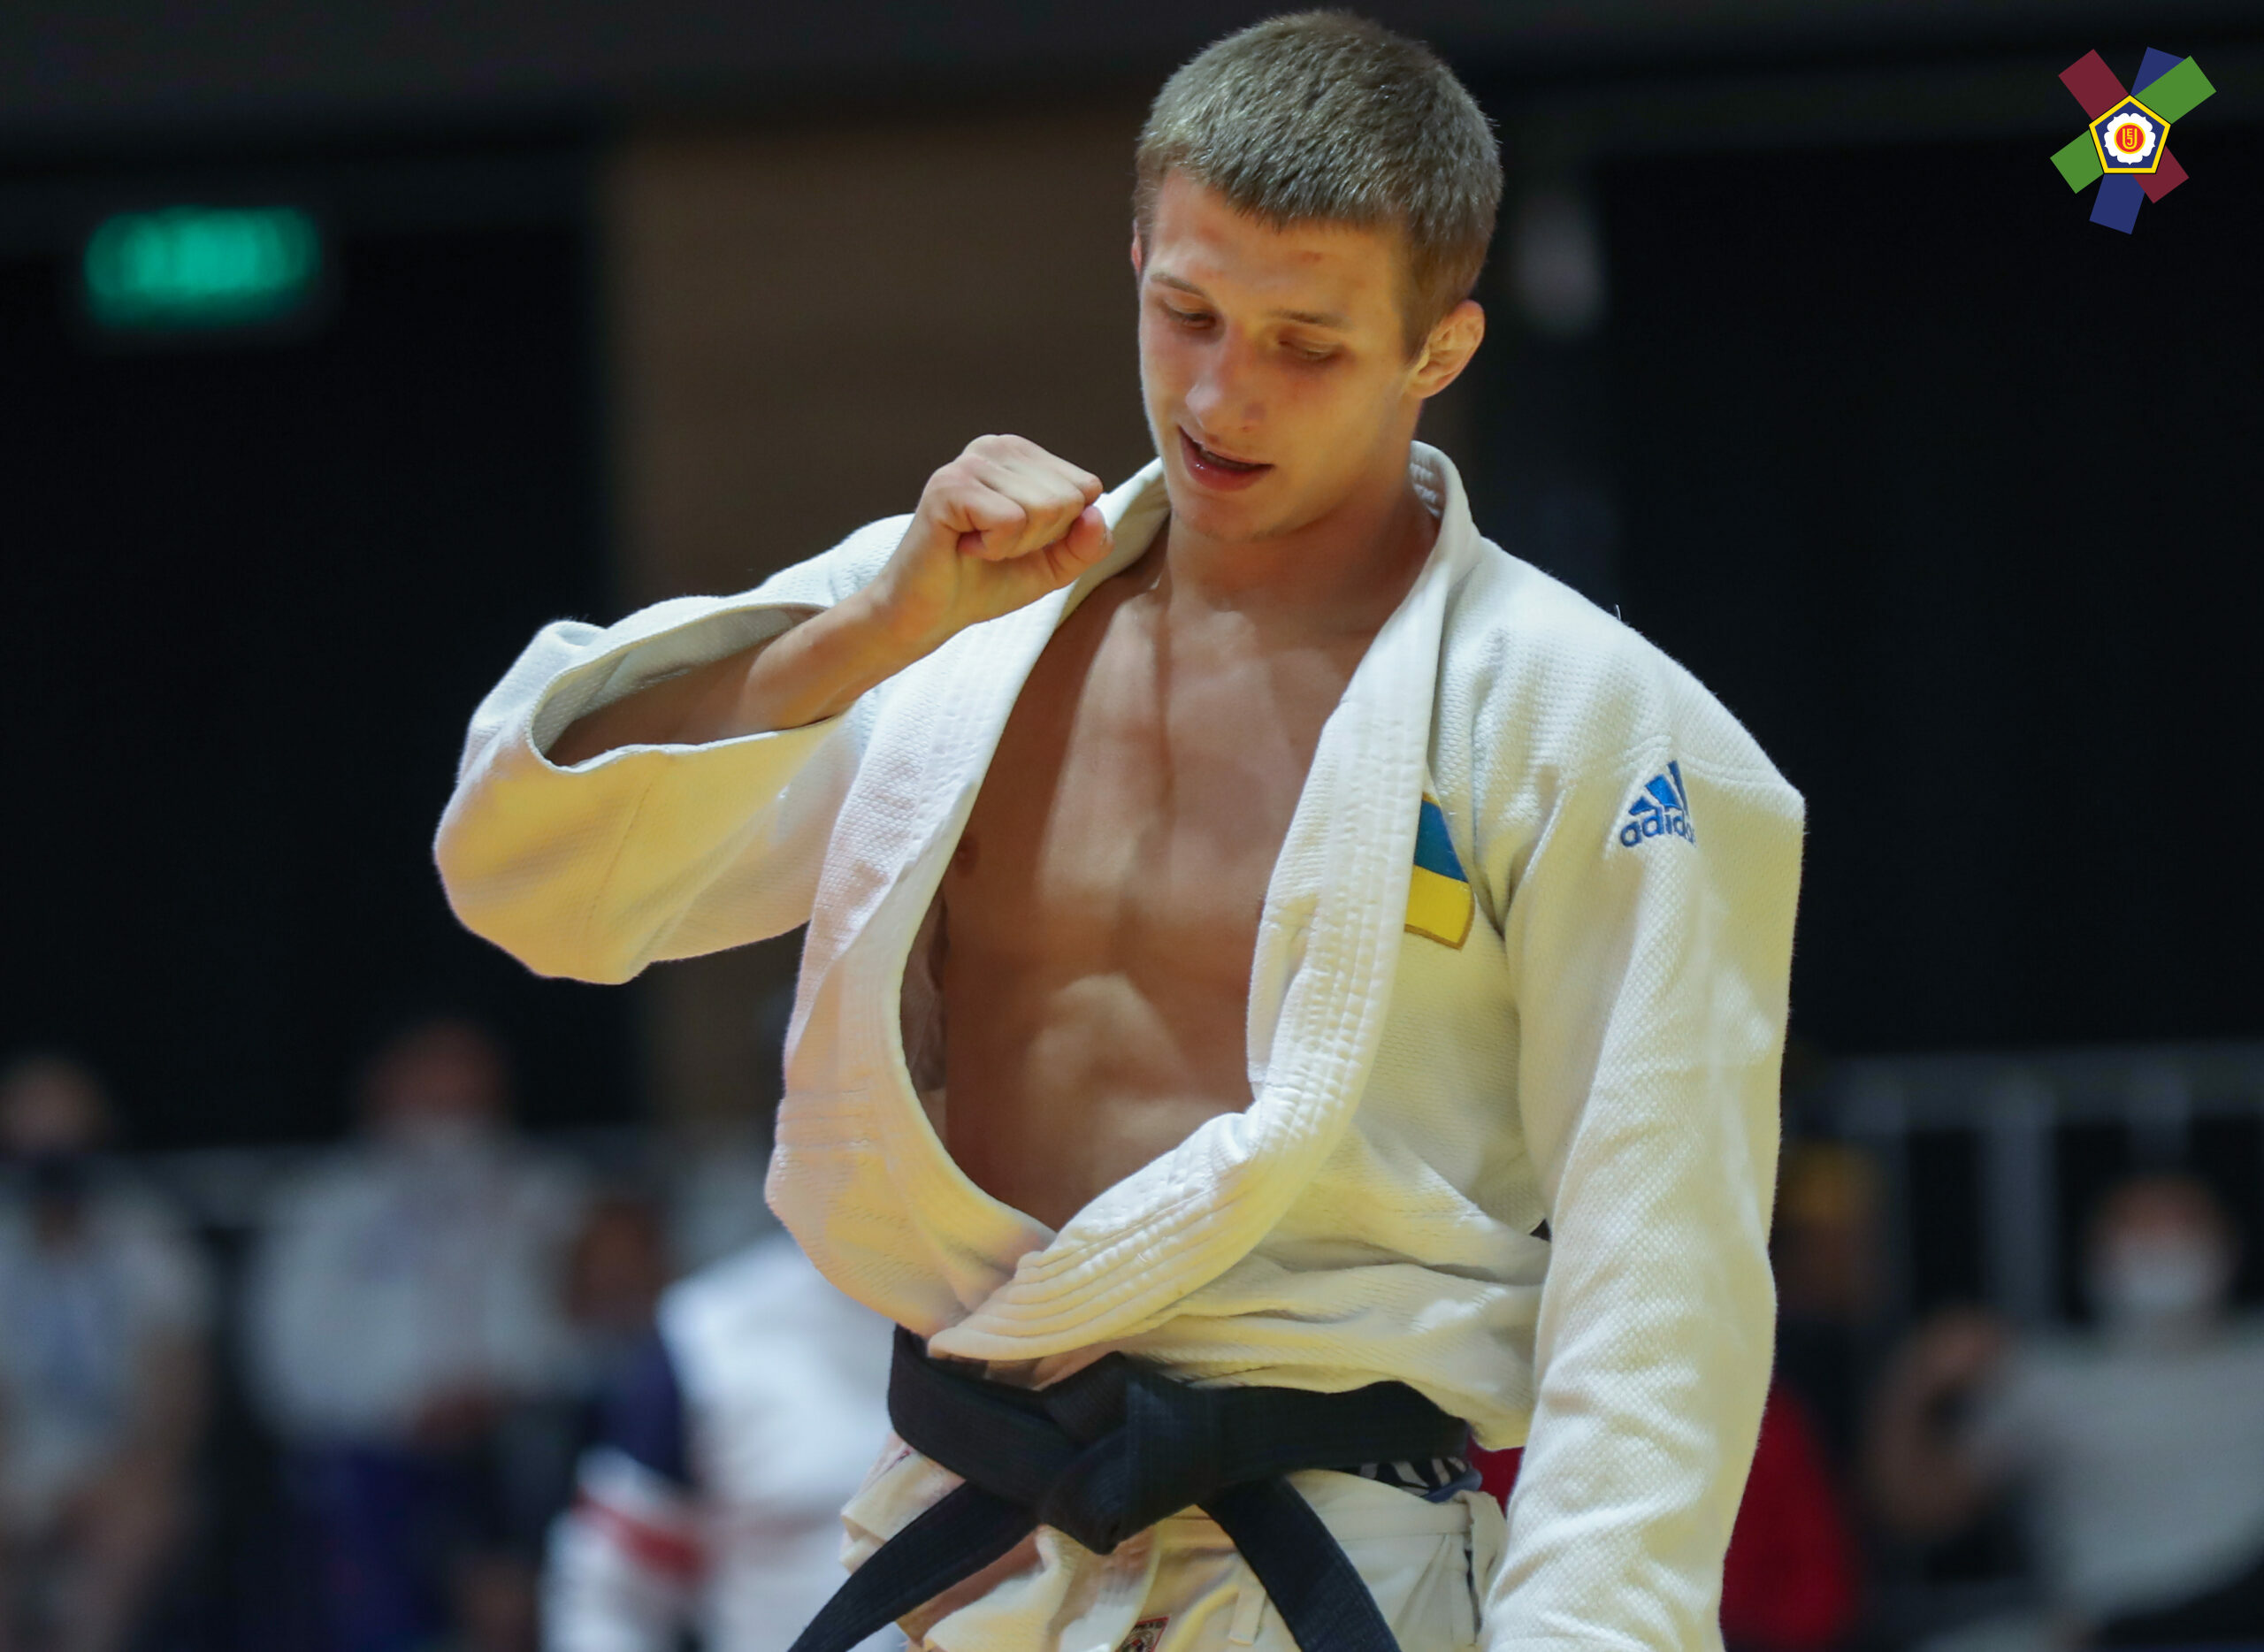  European Judo Open  :   